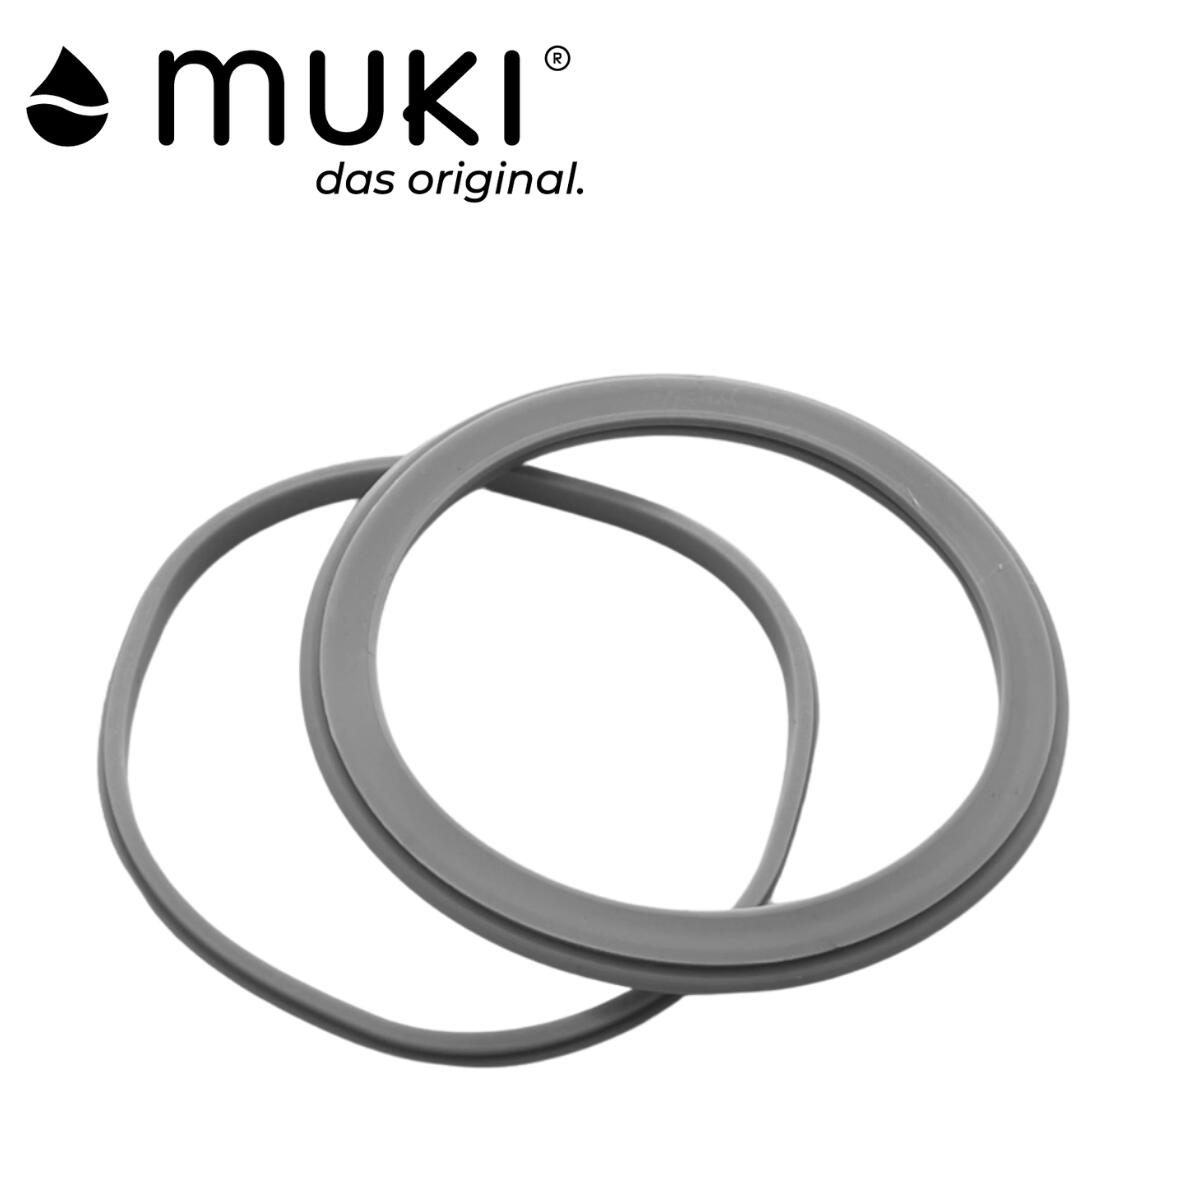 muki(ムキ) ランチジャー用 シリコンリング セット